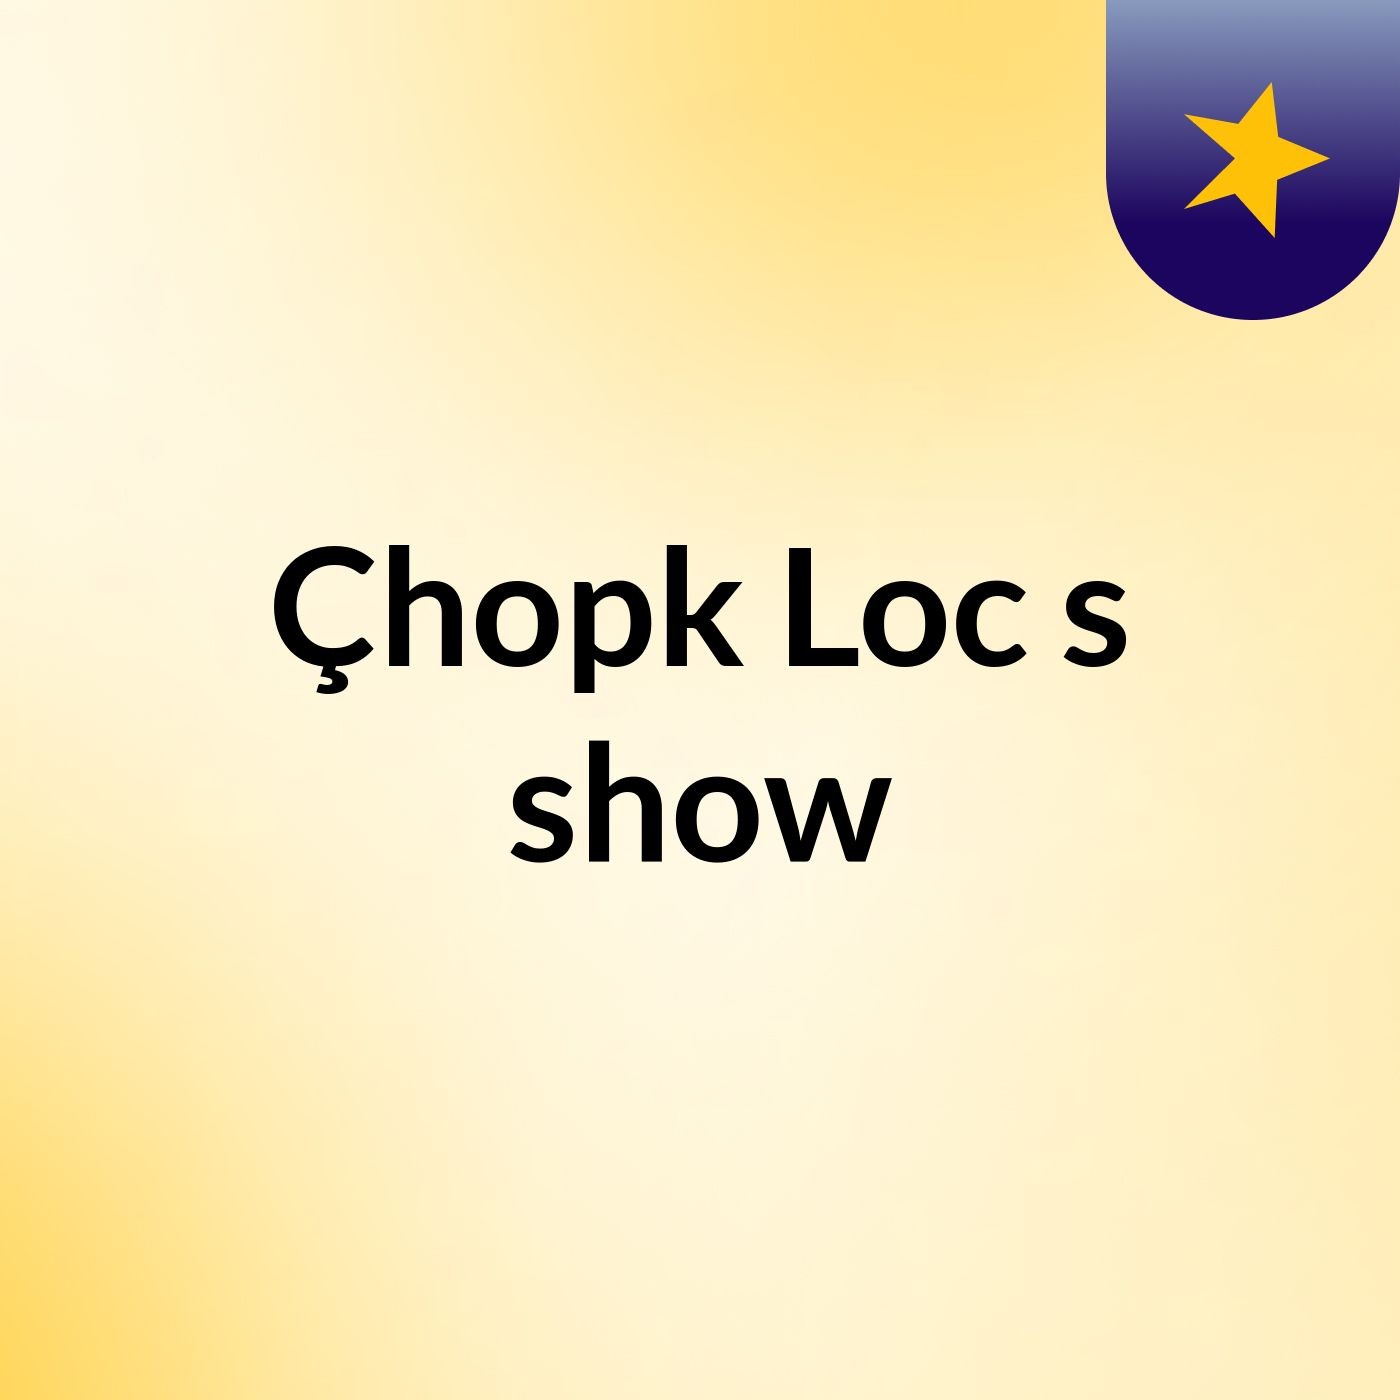 Çhopk Loc's show